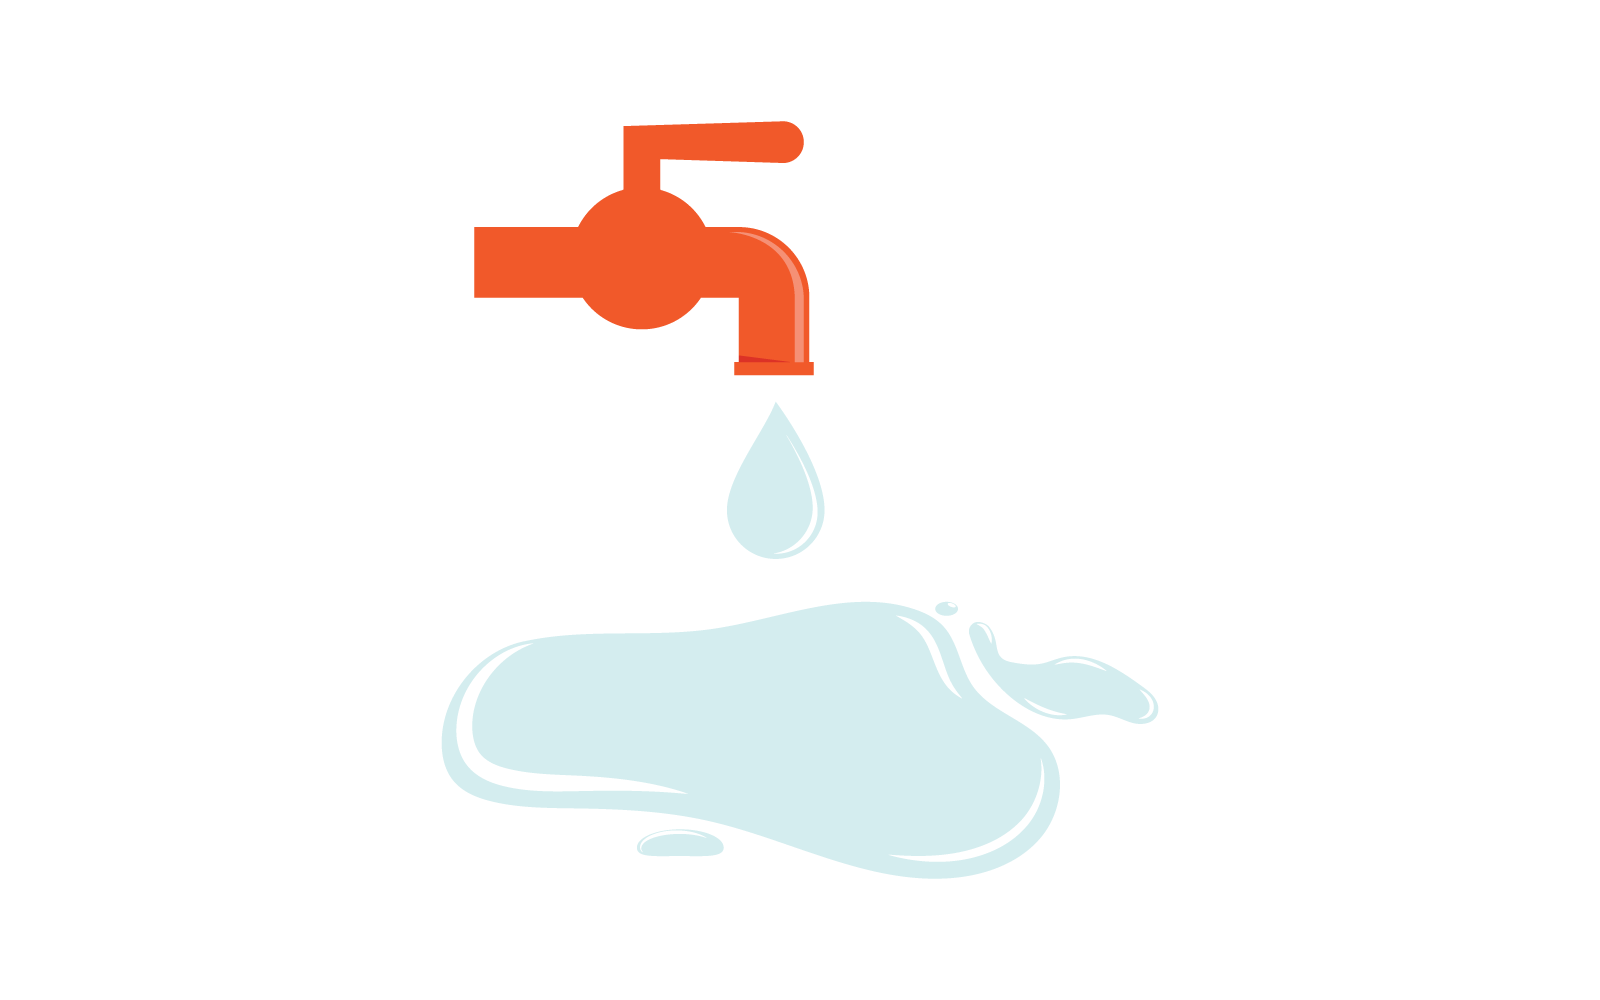 Water Plumbing logo vector design template